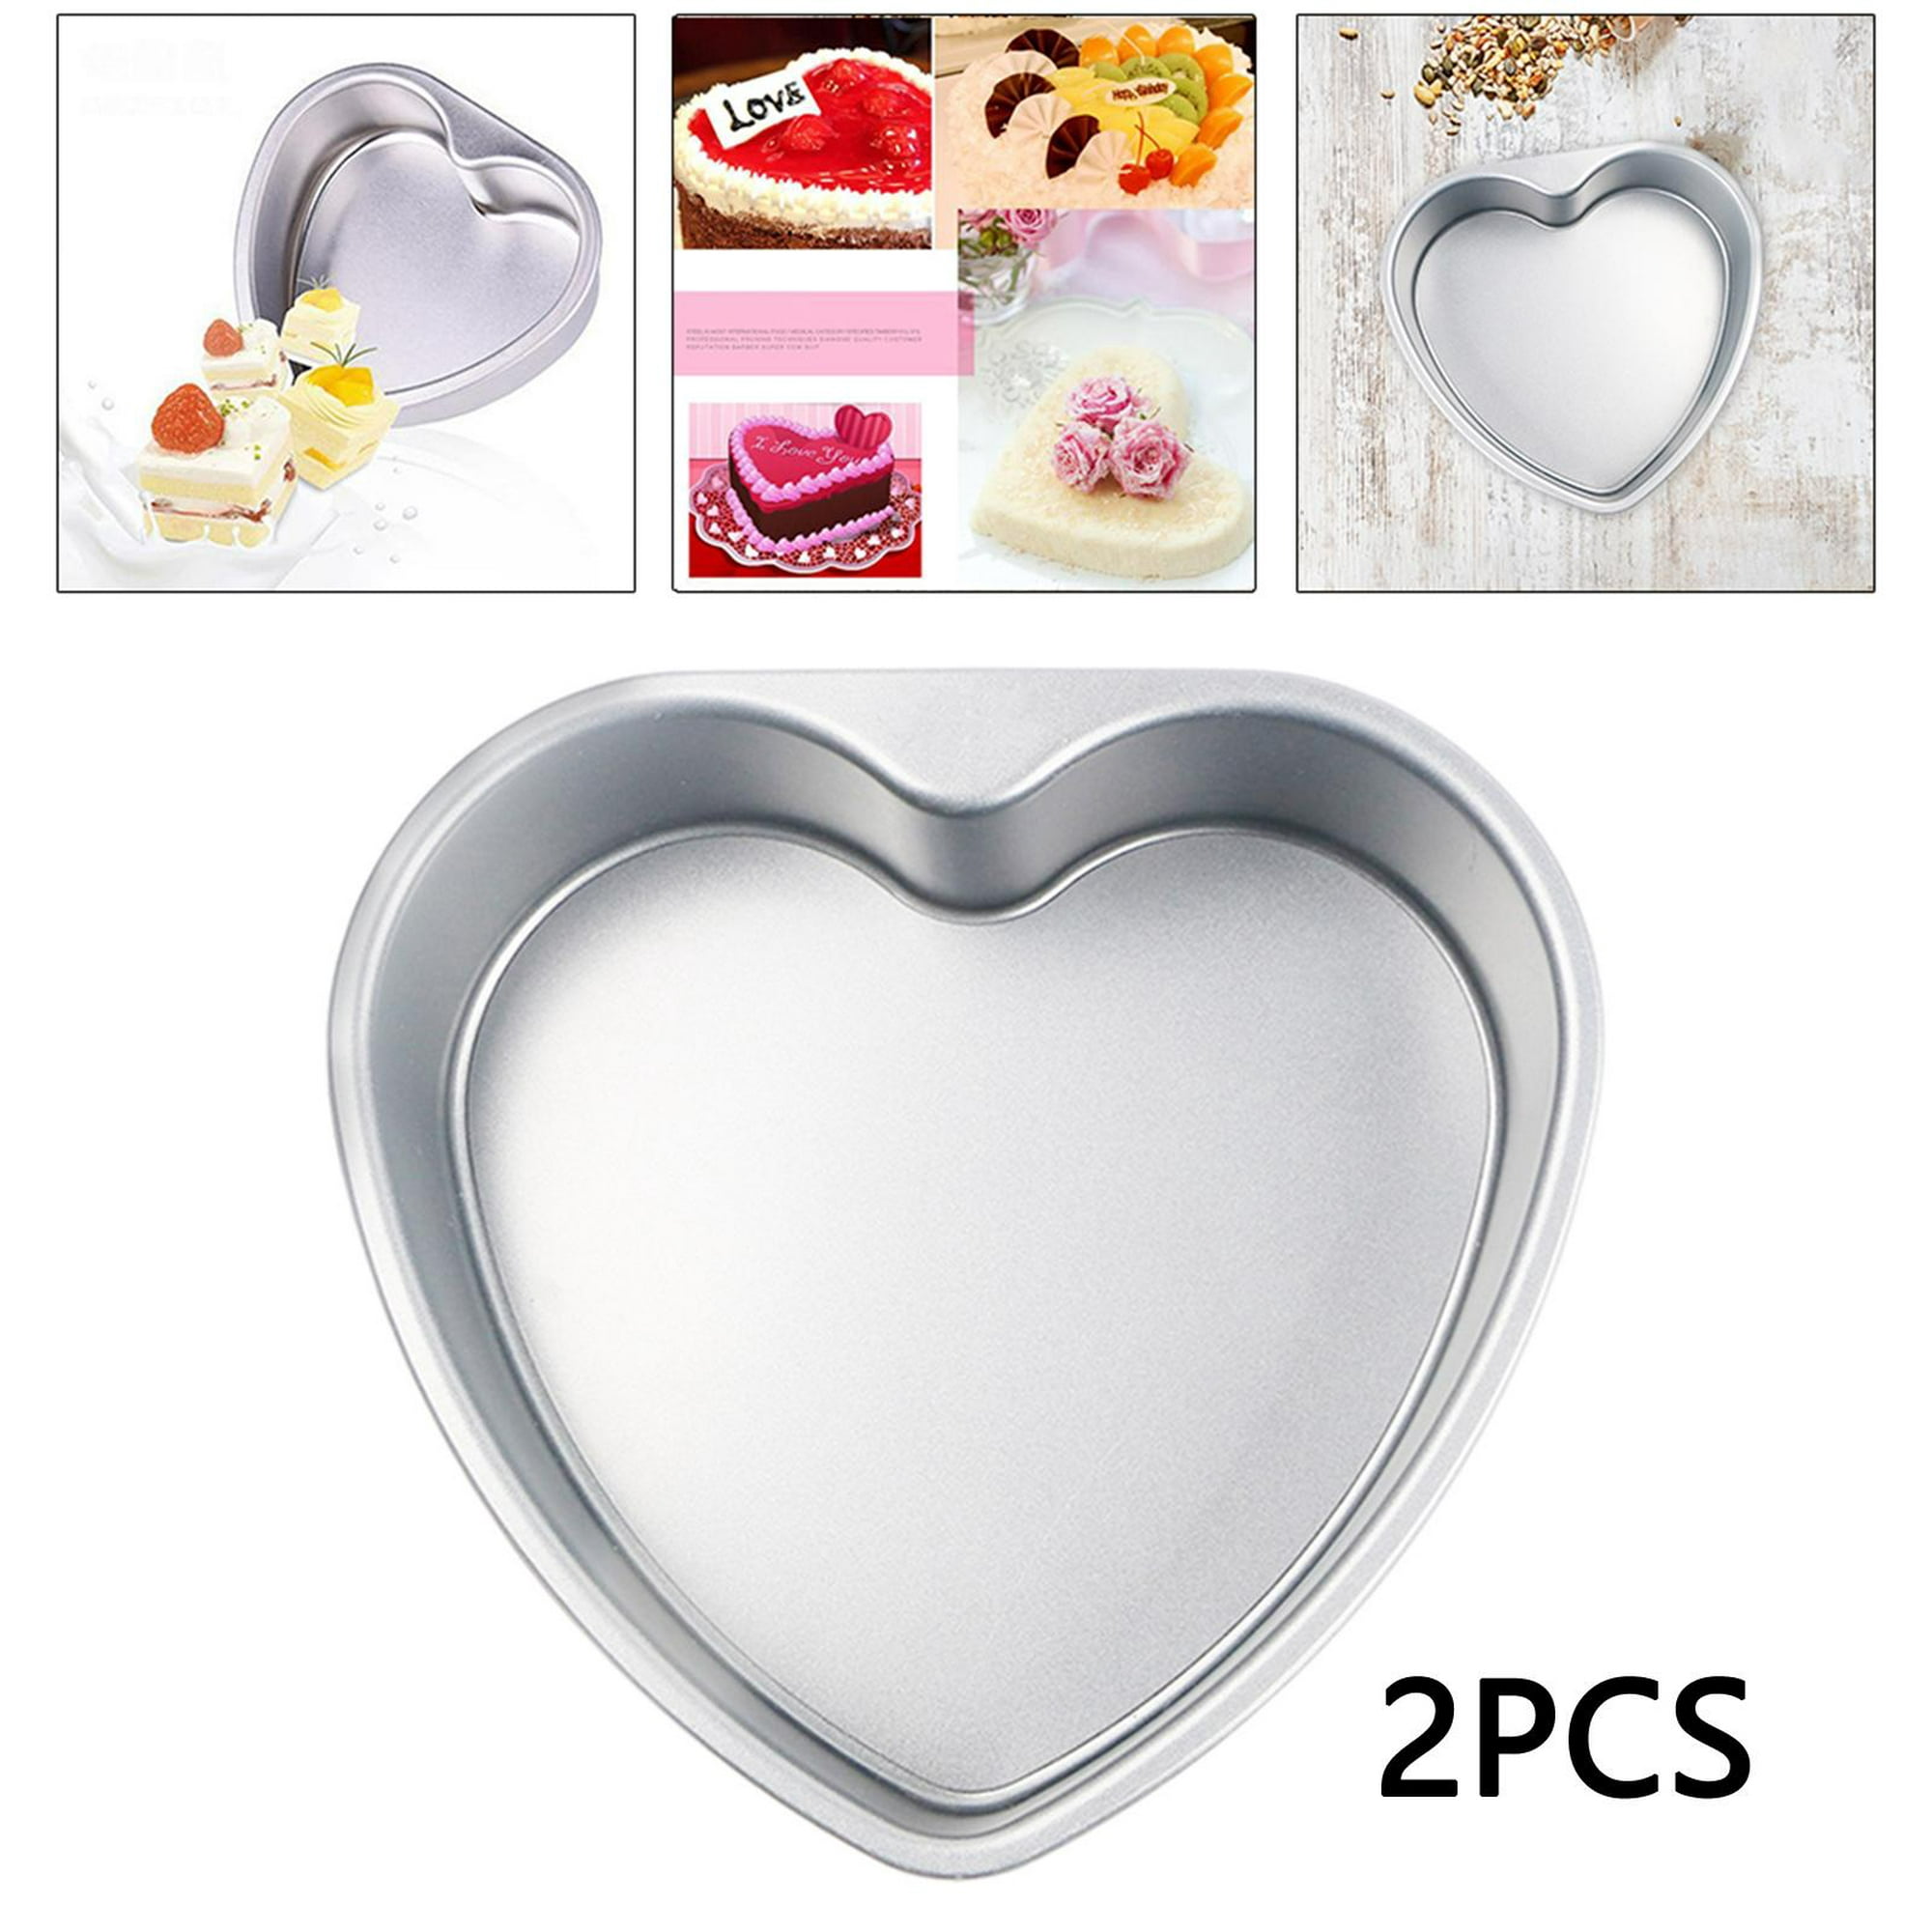 Moldes para pasteles en forma de corazón para el día de San Valentín y  hornear en casa, juego de 2 moldes de aluminio con parte inferior extraíble  de